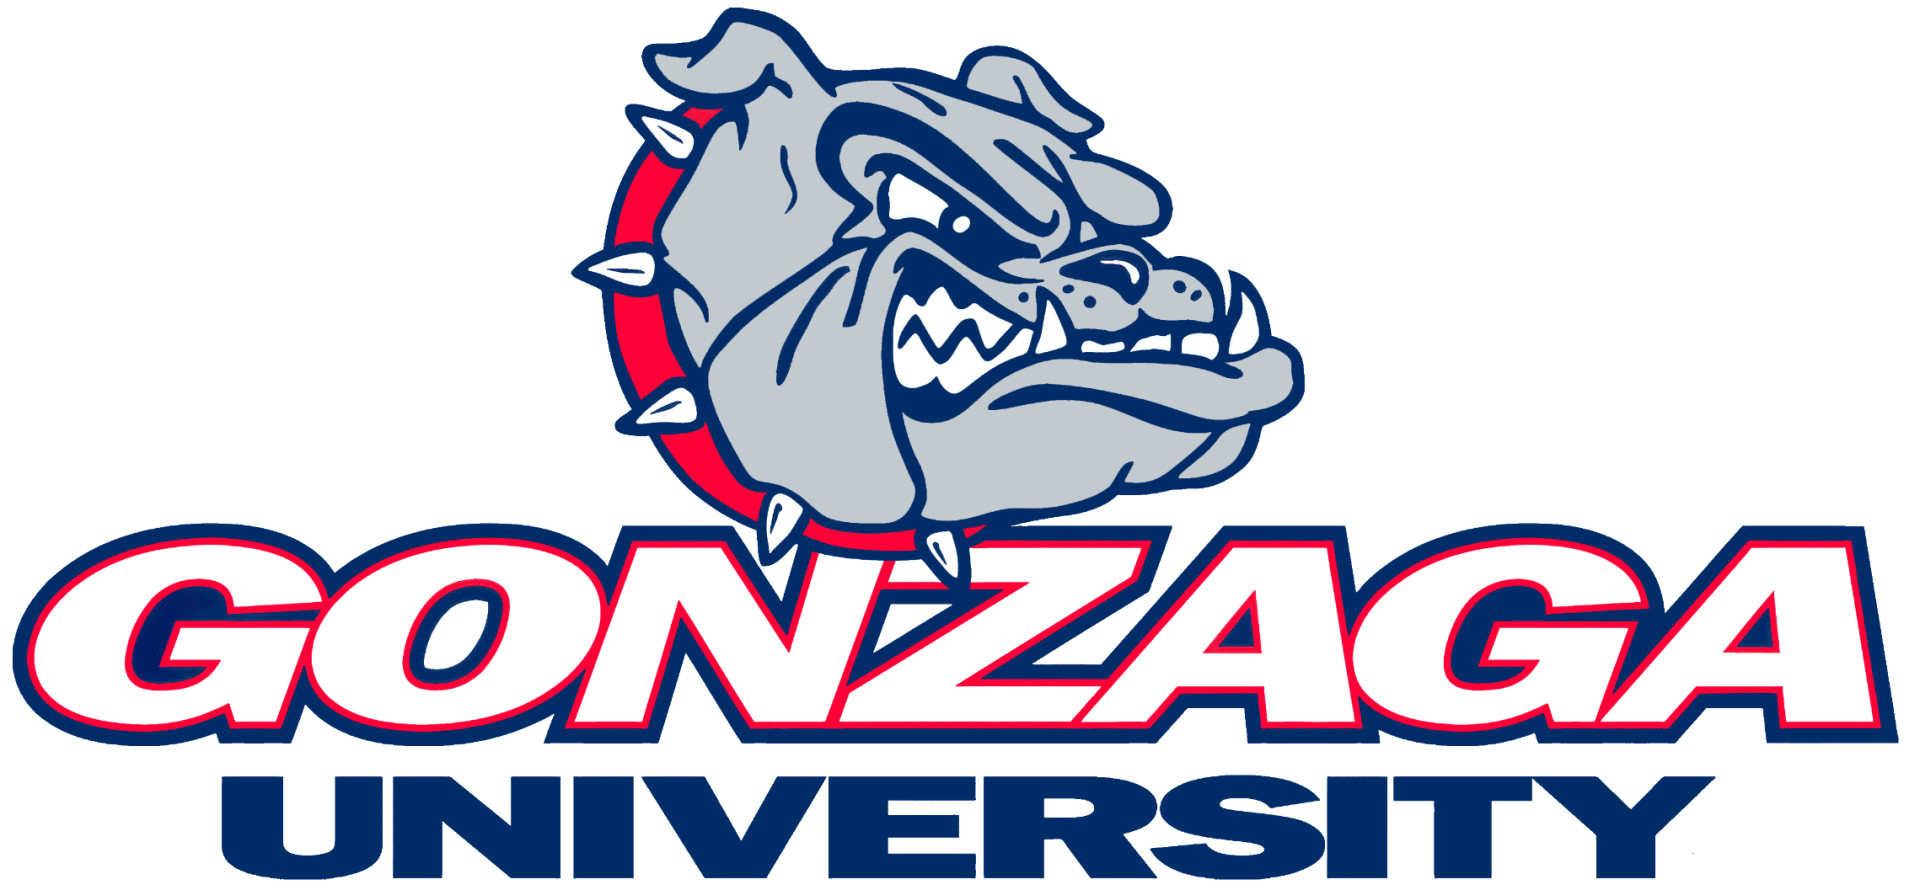 Gonzaga Bulldogs logo